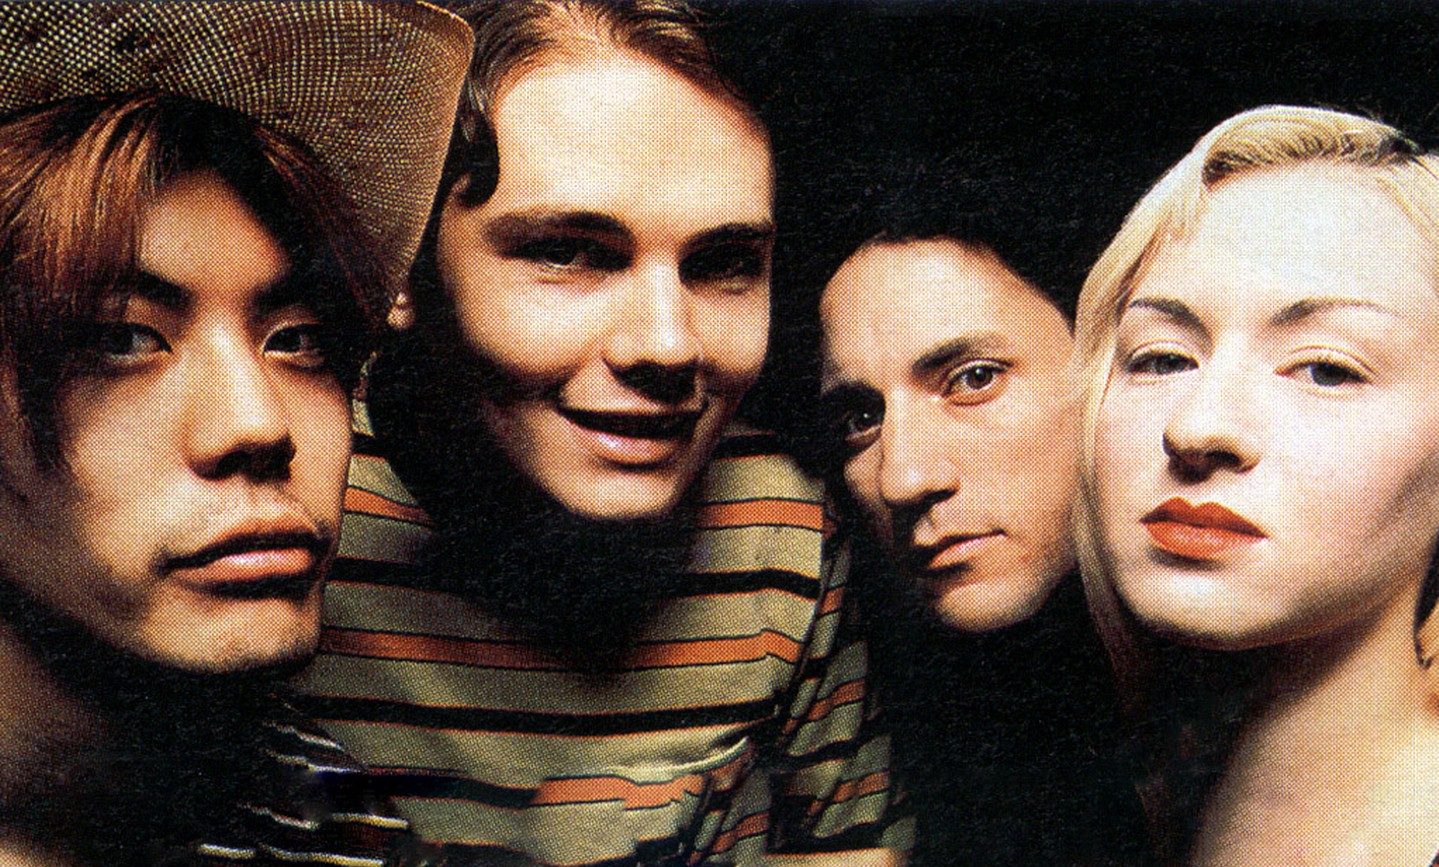 Billy Corgan podría estar planeando una reunión de los originales The Smashing Pumpkins